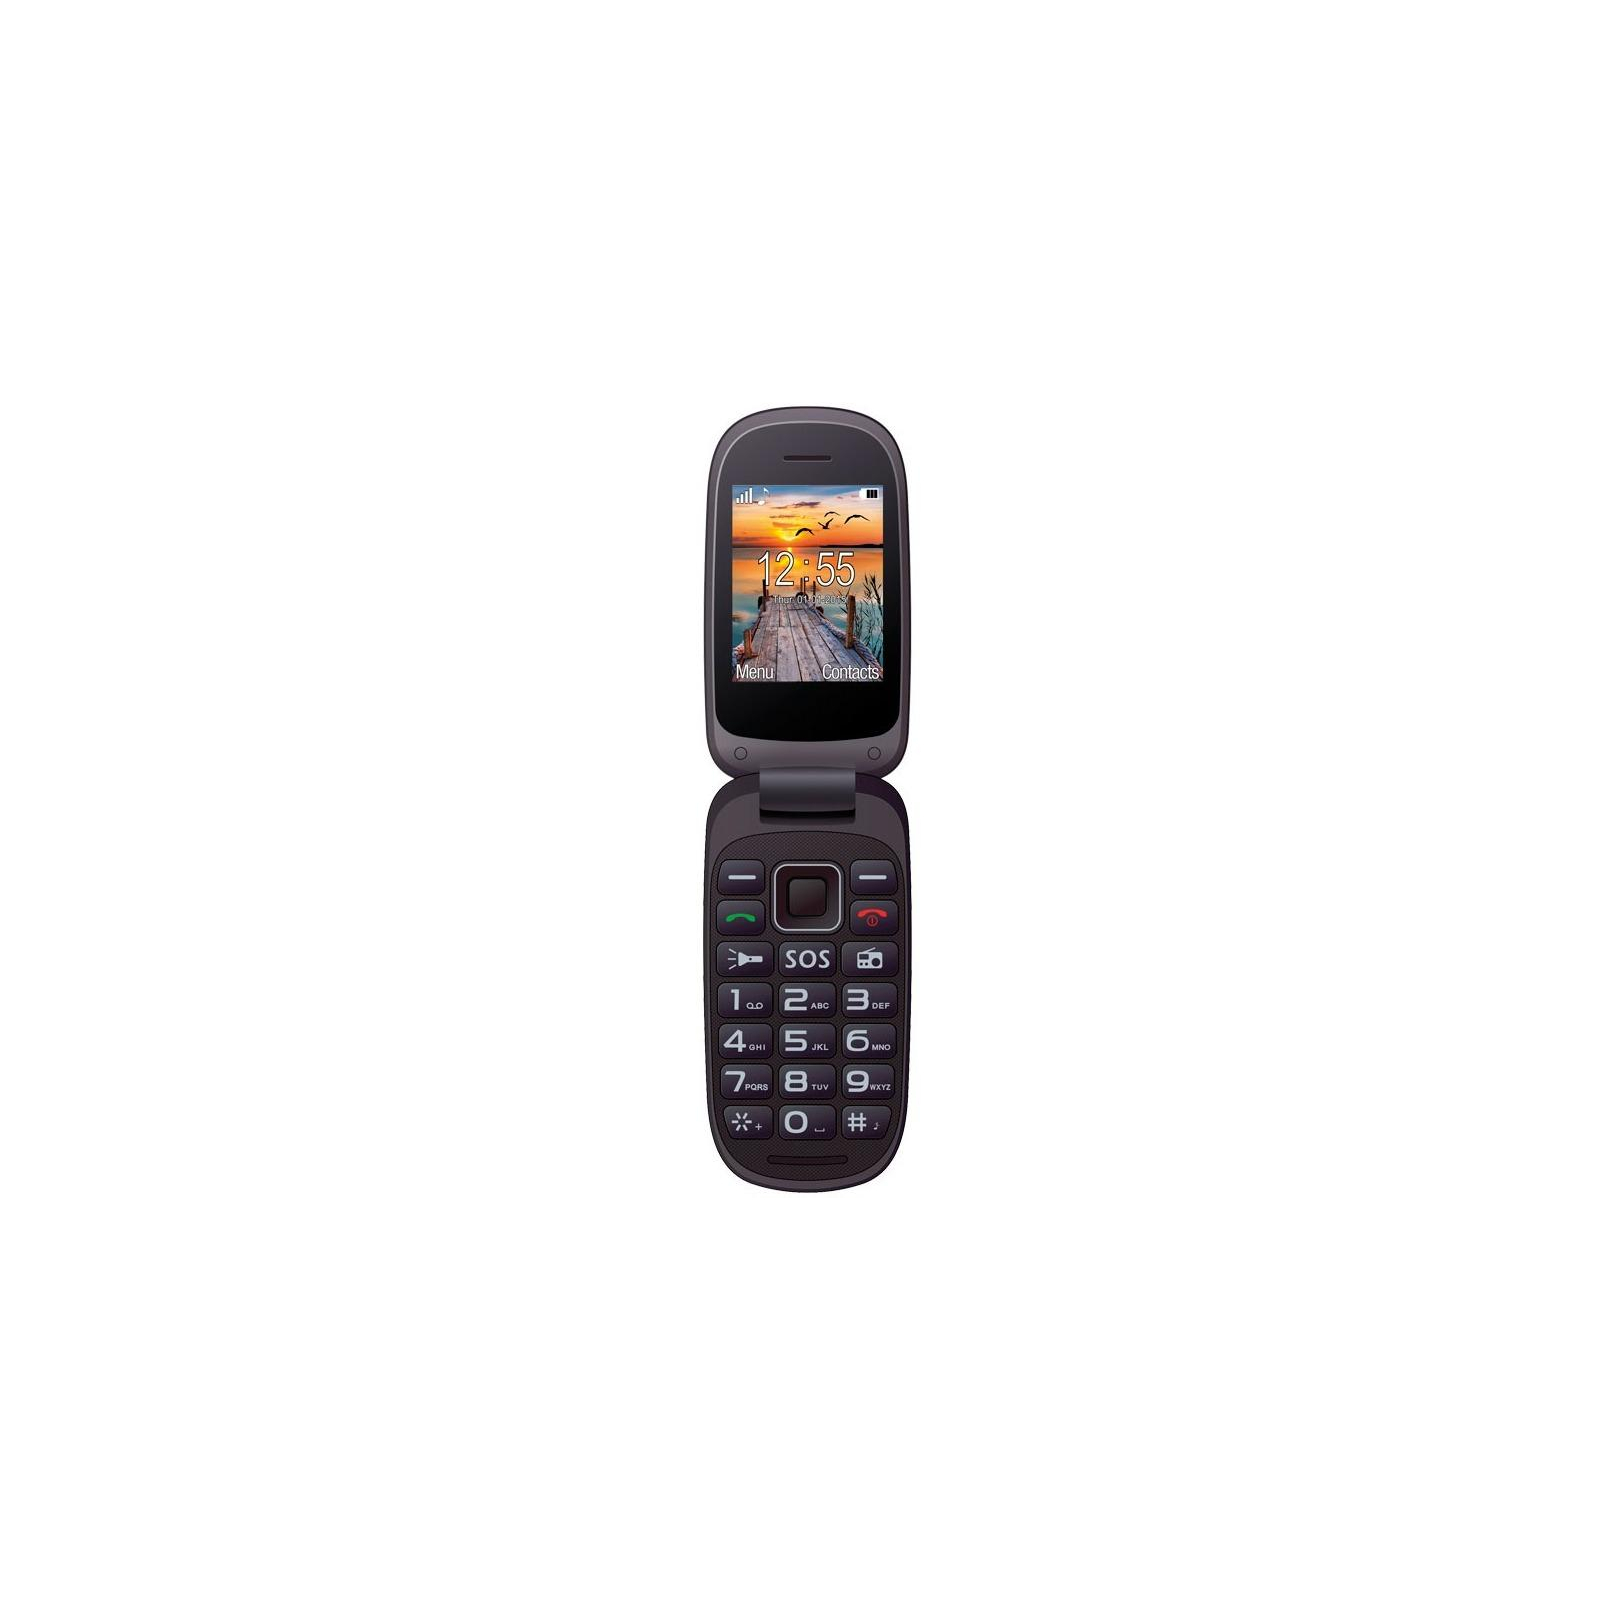 Мобильный телефон Maxcom MM818 Black (5908235973845) изображение 5